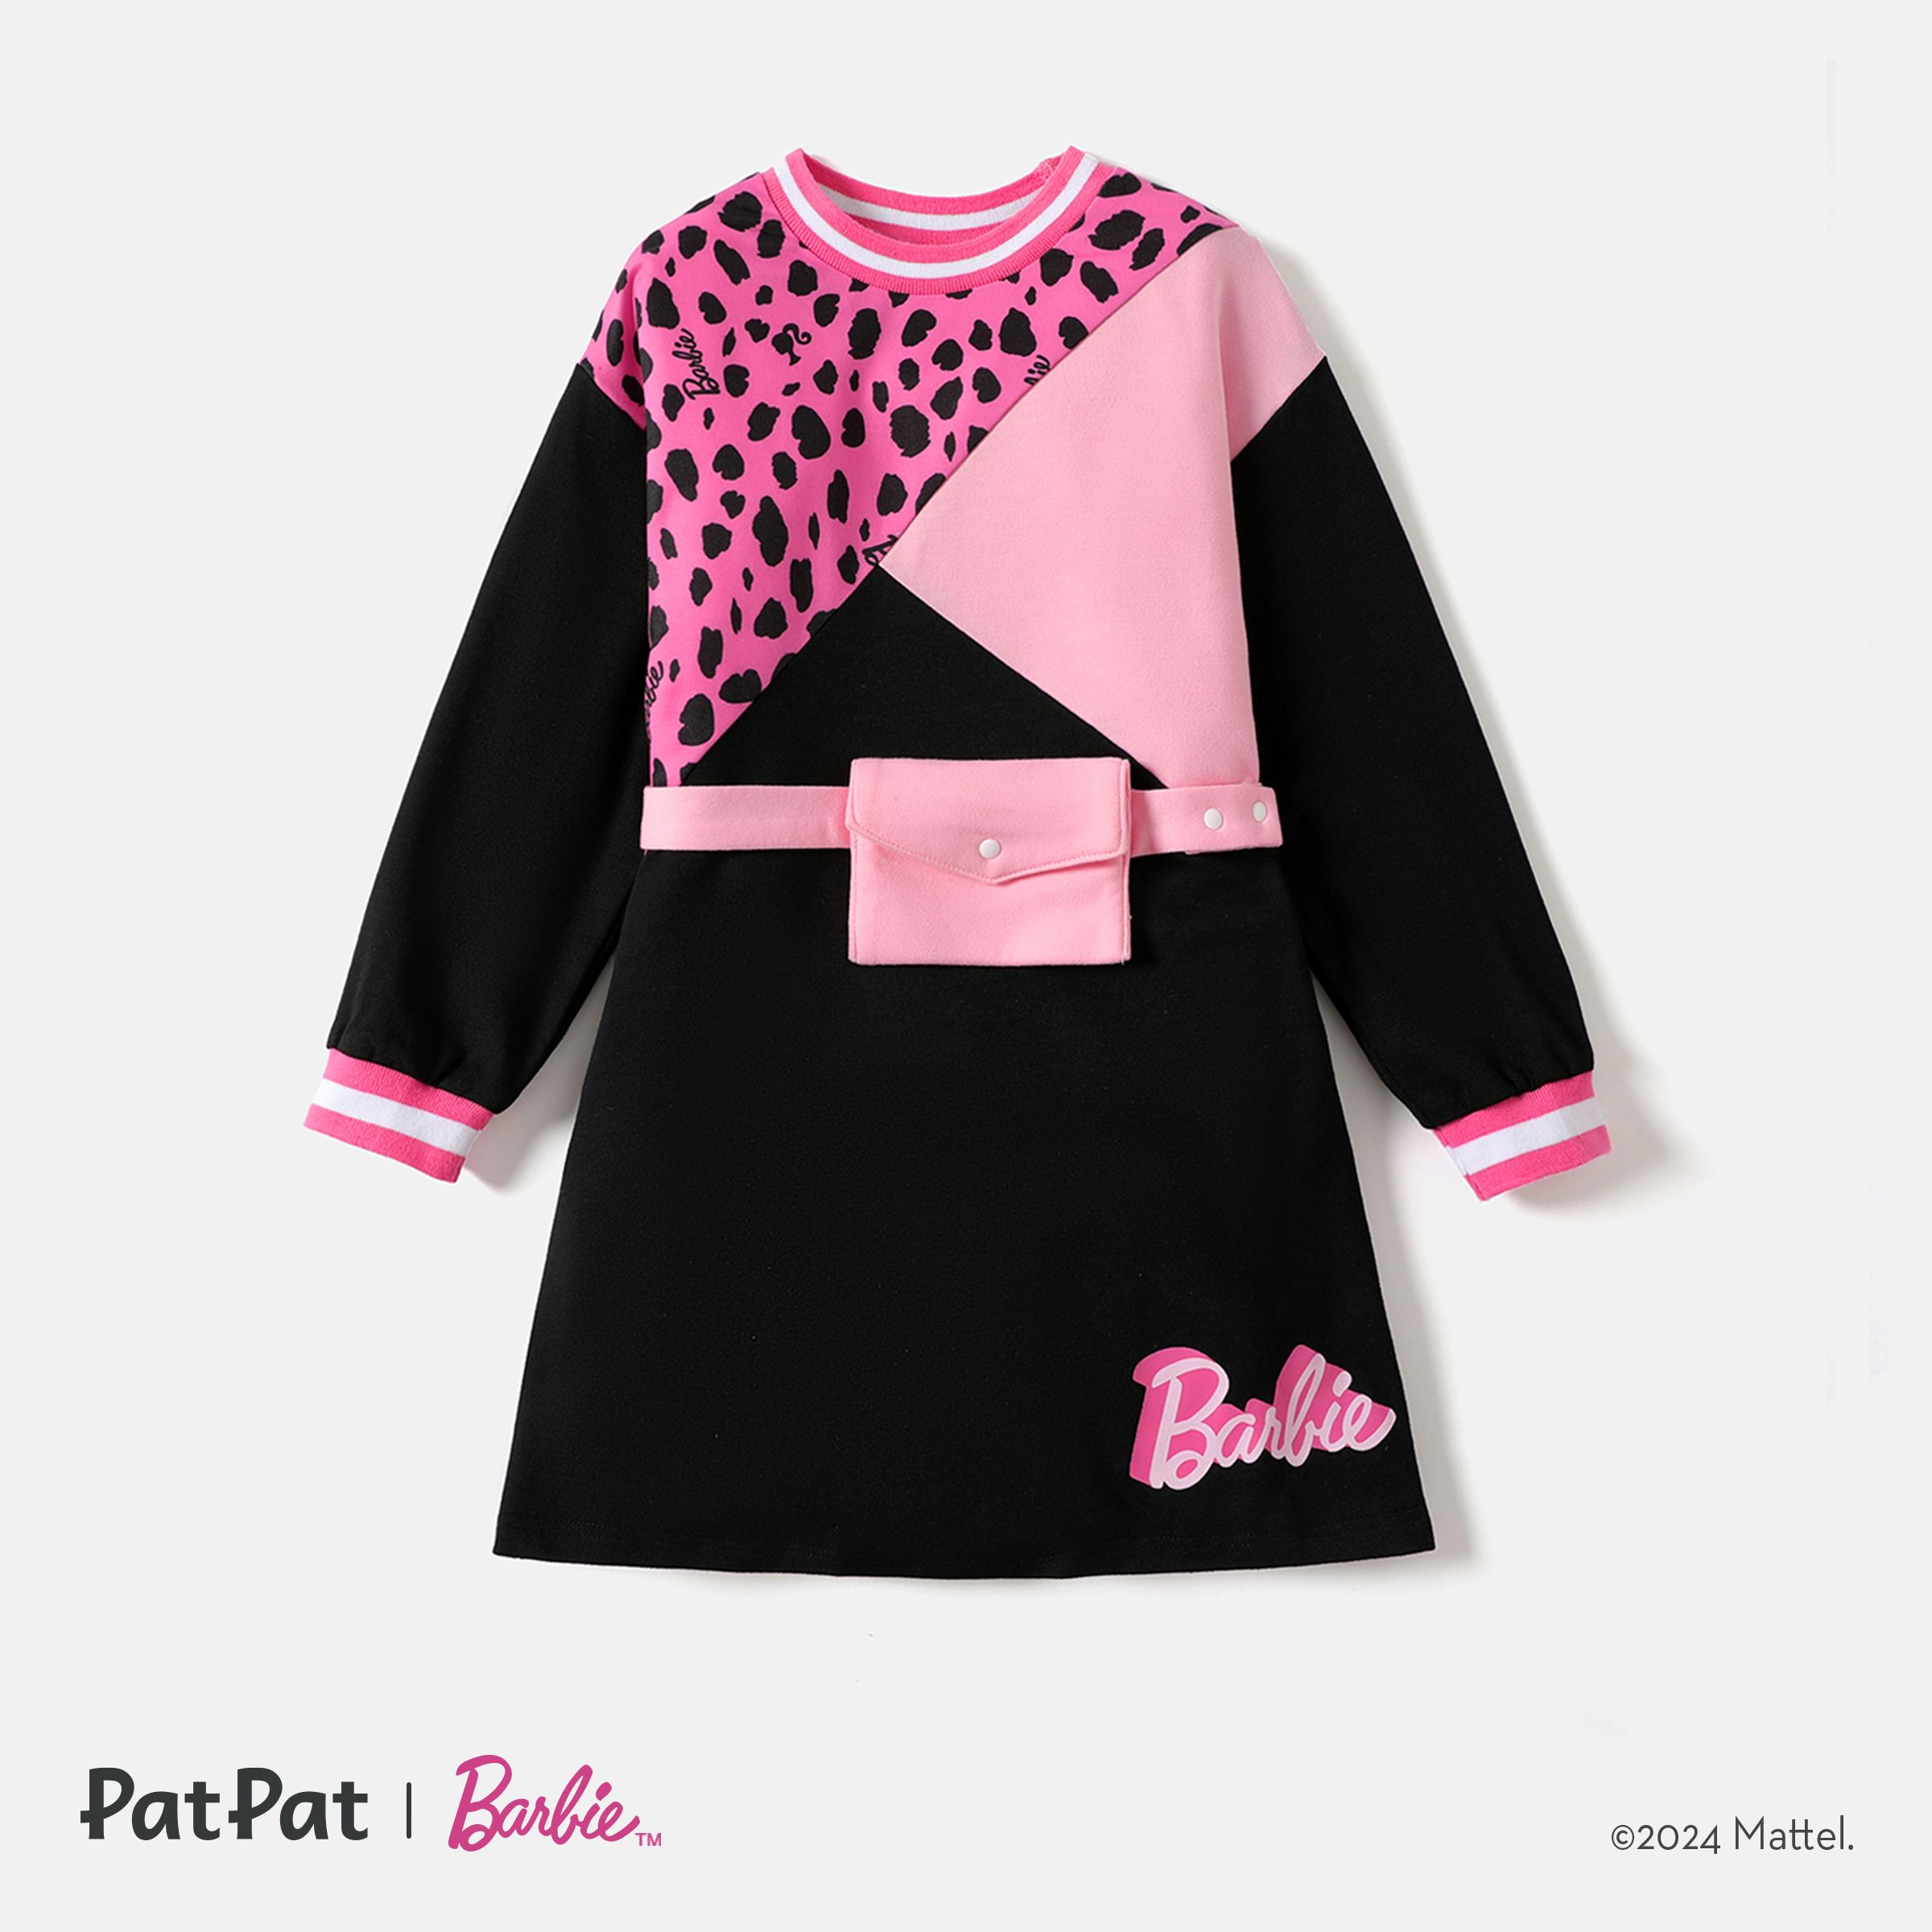 Barbie Enfant Fille Imprimé Léopard/colorblock Taille Sac Conception Sweat Robe